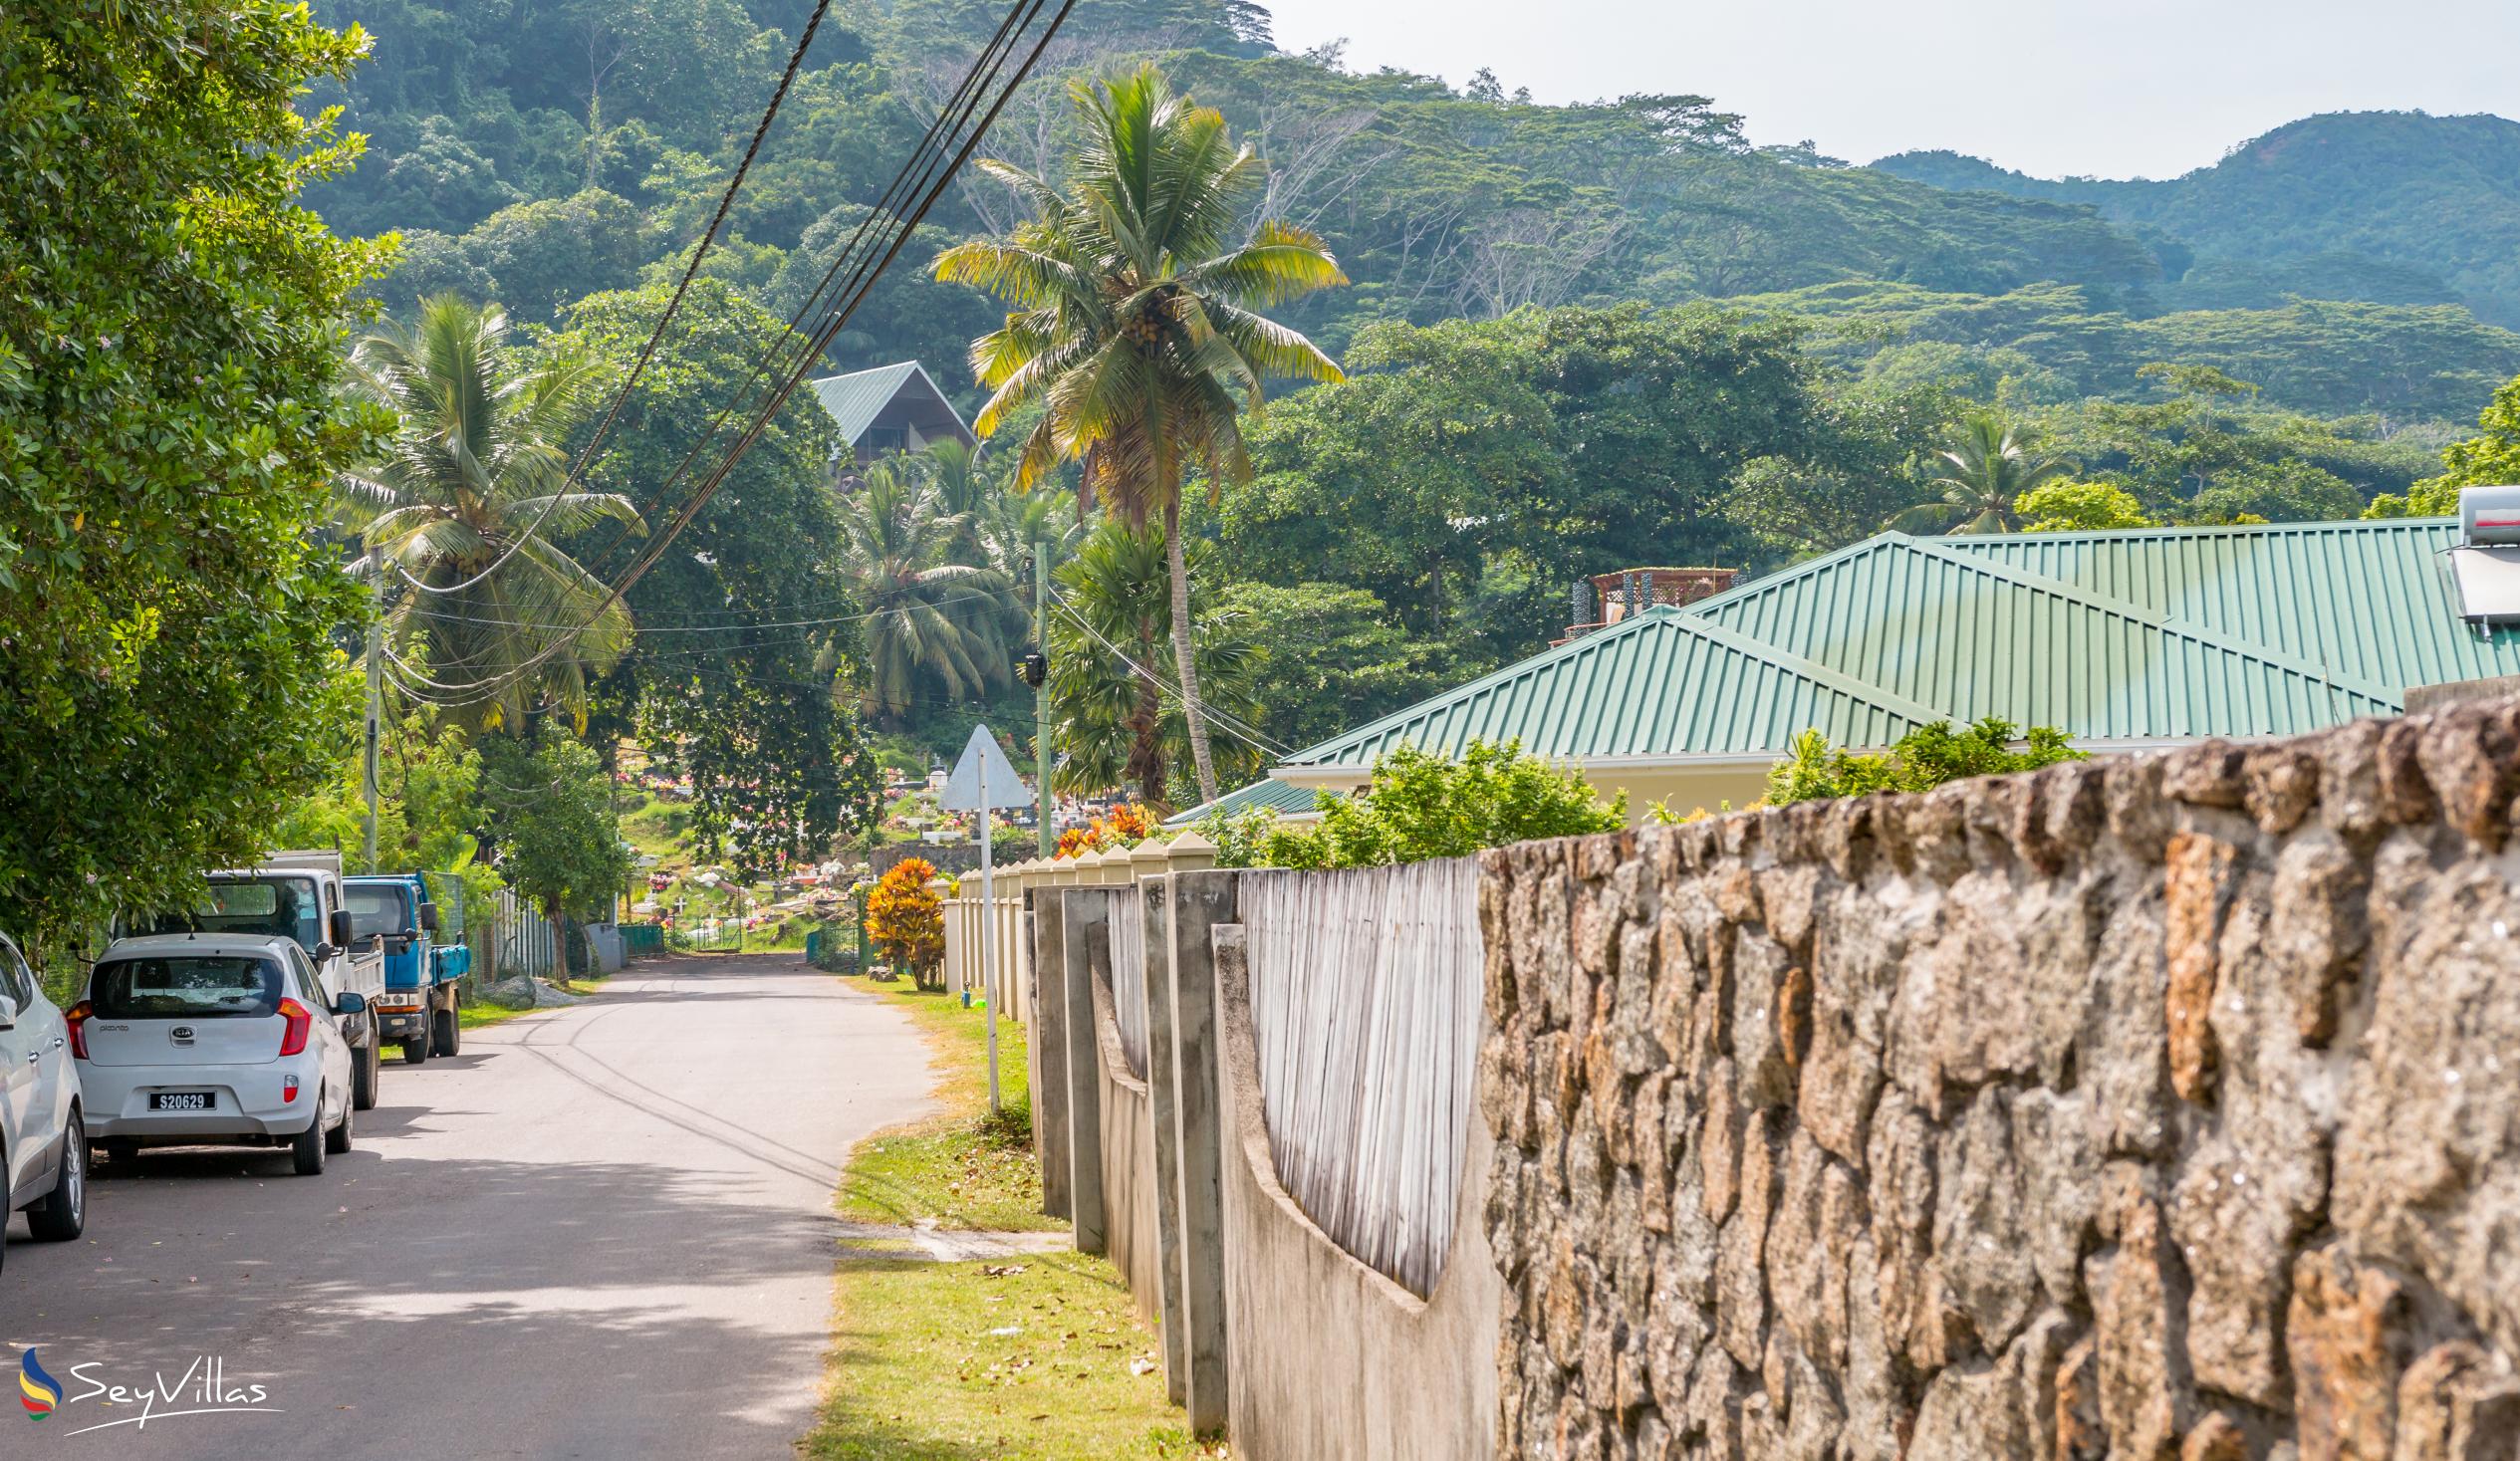 Foto 19: Coco Blanche (Maison Coco) - Location - Mahé (Seychelles)